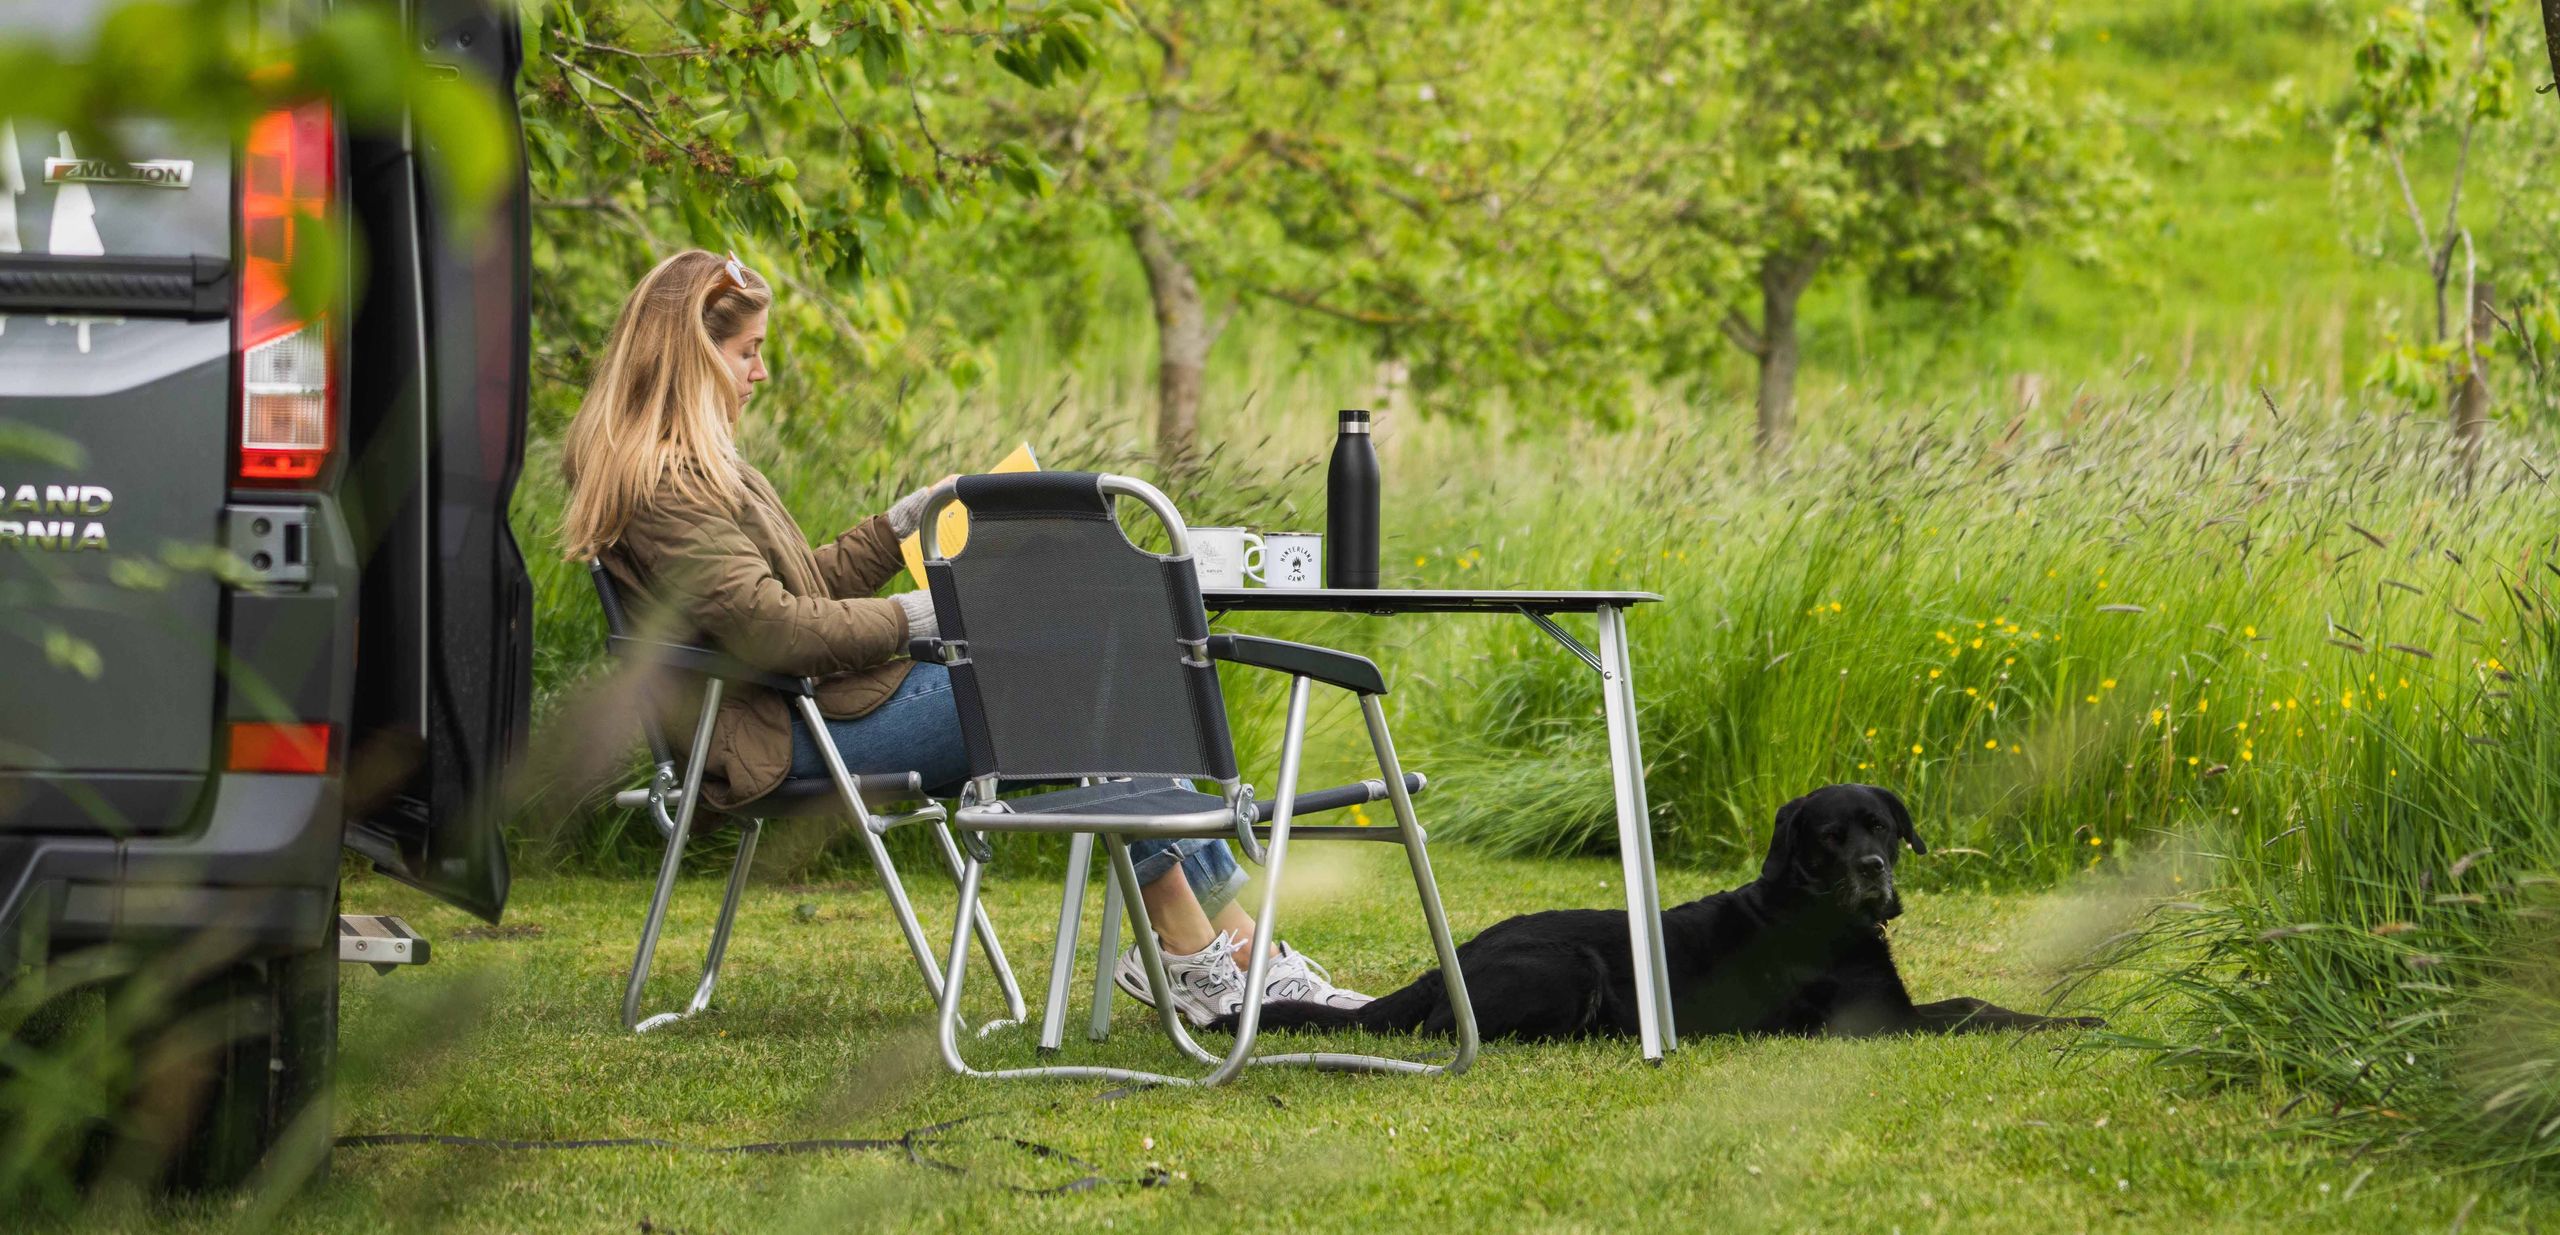 Camper steht auf einem eingezäunten Stellplatz im hohen Gras umgeben von Bäumen, man erkennt den Hund und seine Besitzerin vor dem Camper sitzen